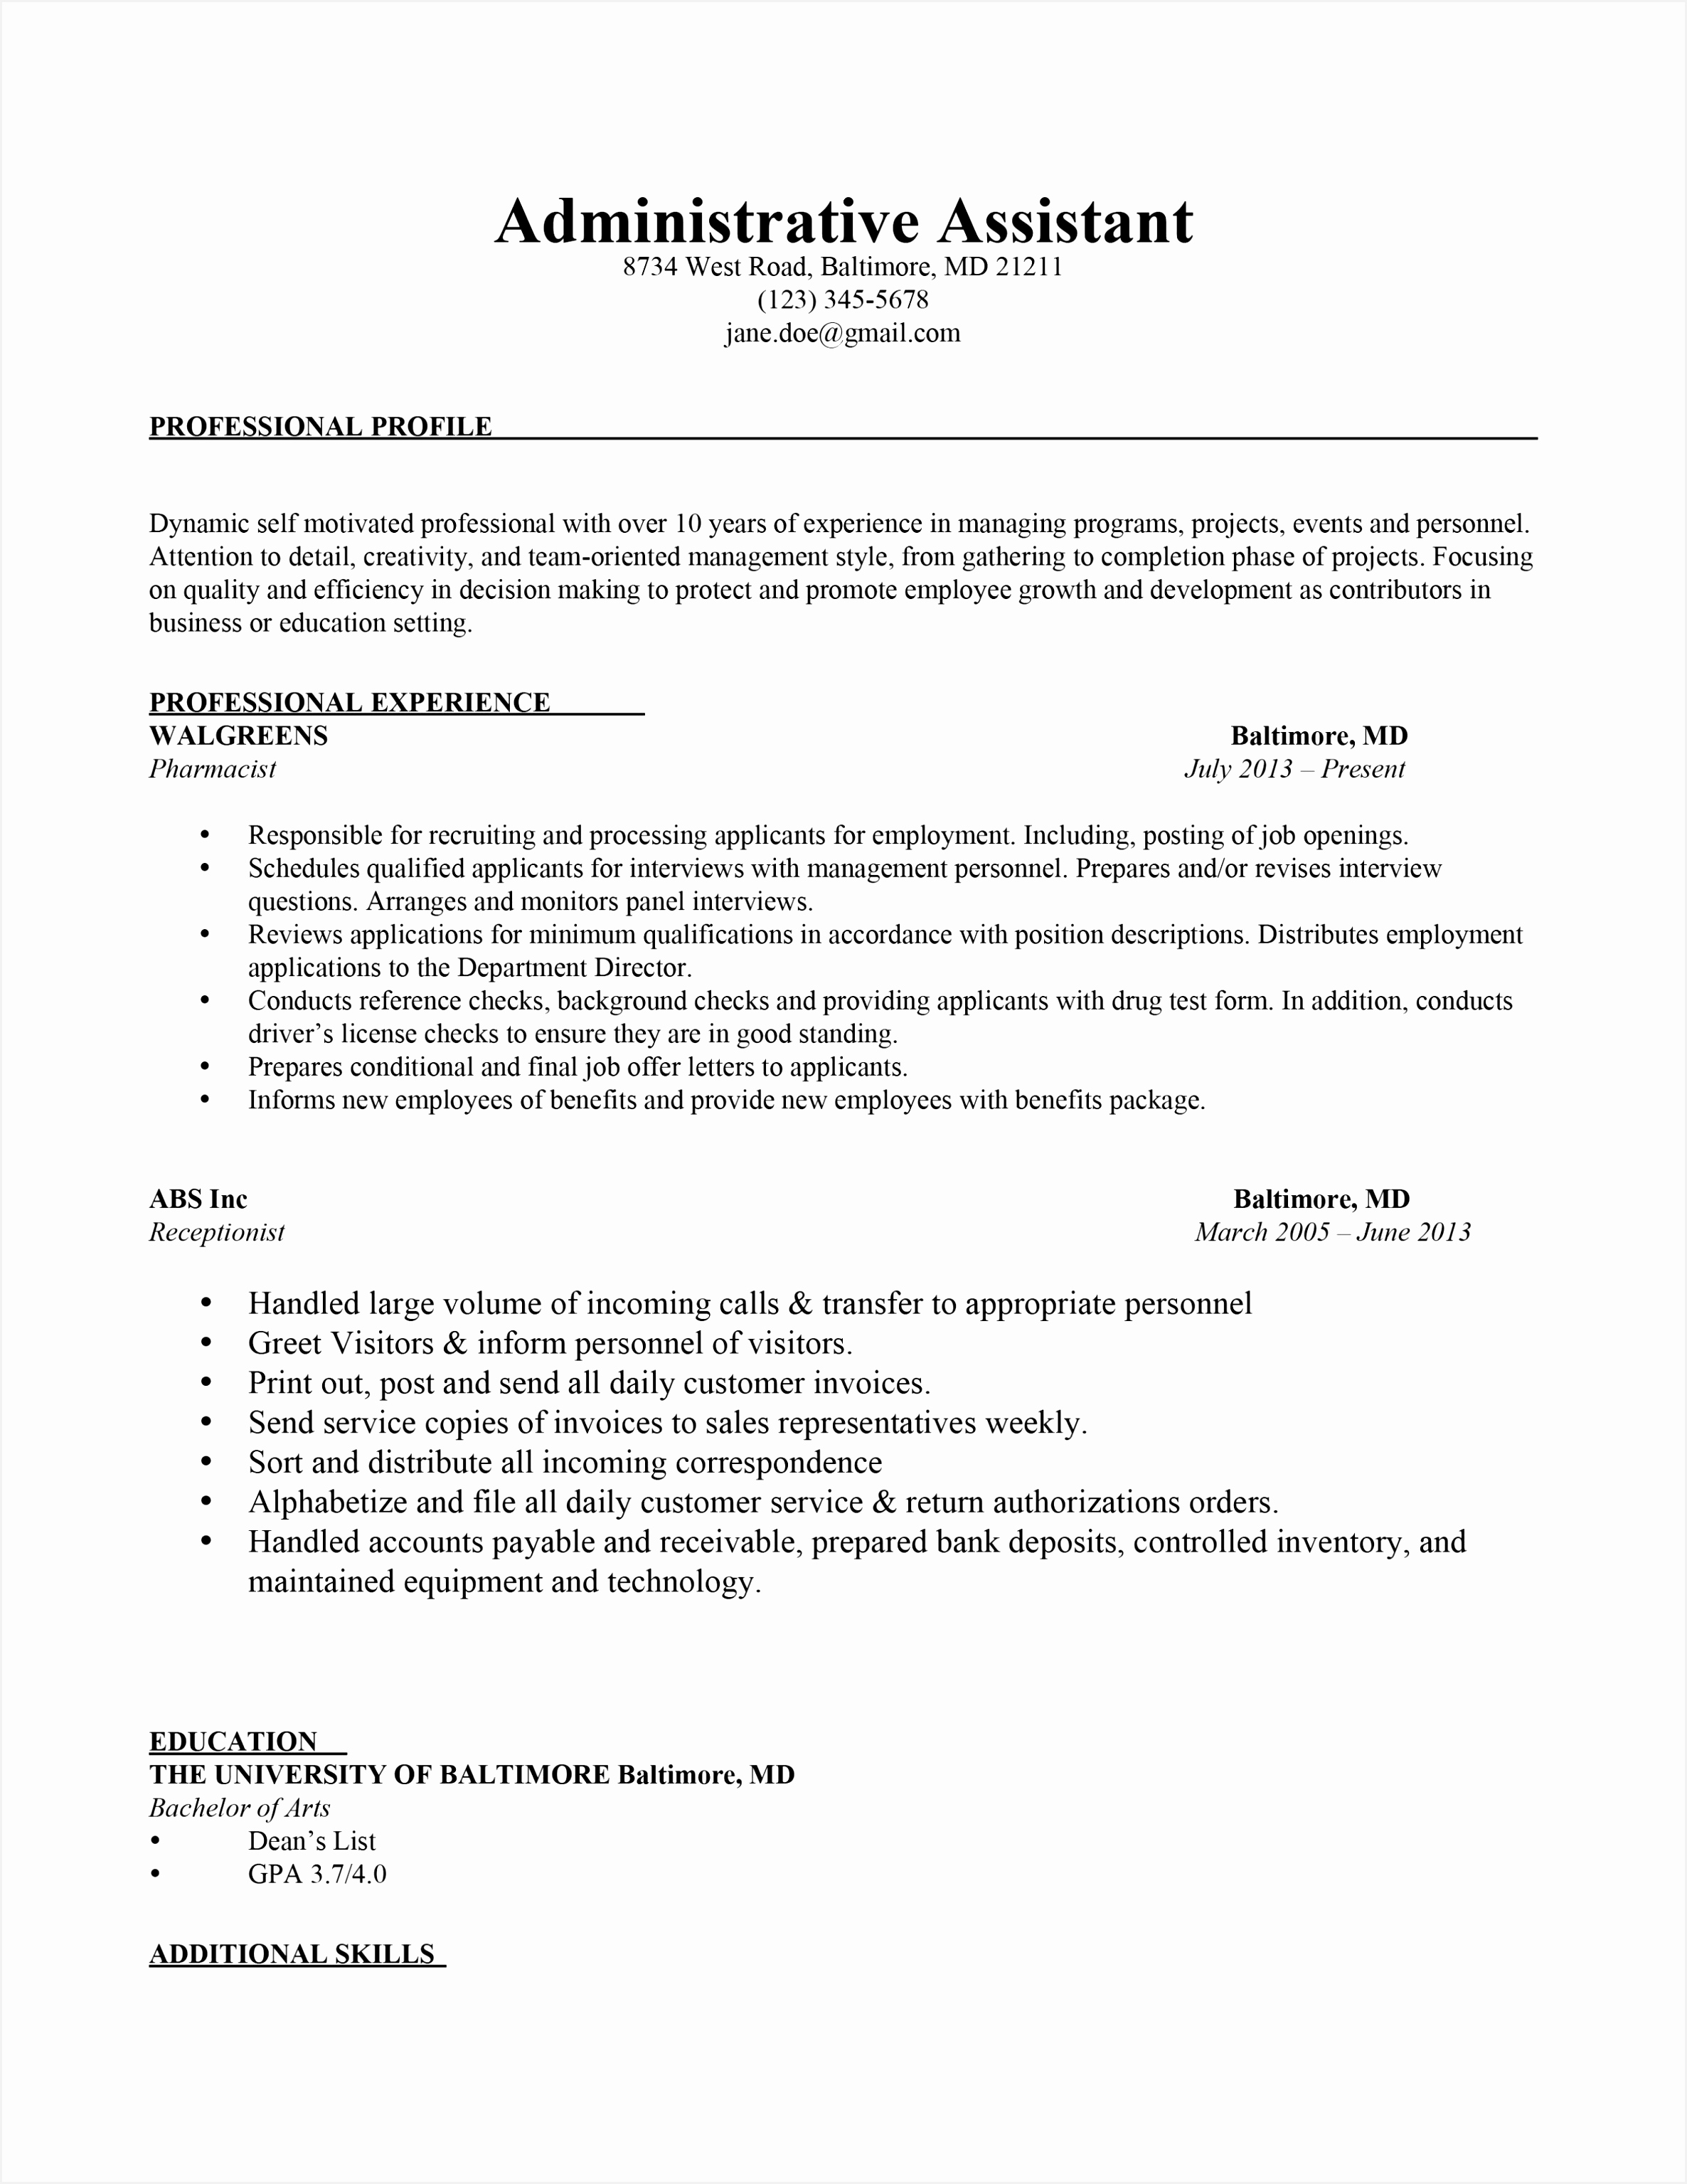 Resume Cover Letter formatted Related Post 30702372jvdjj